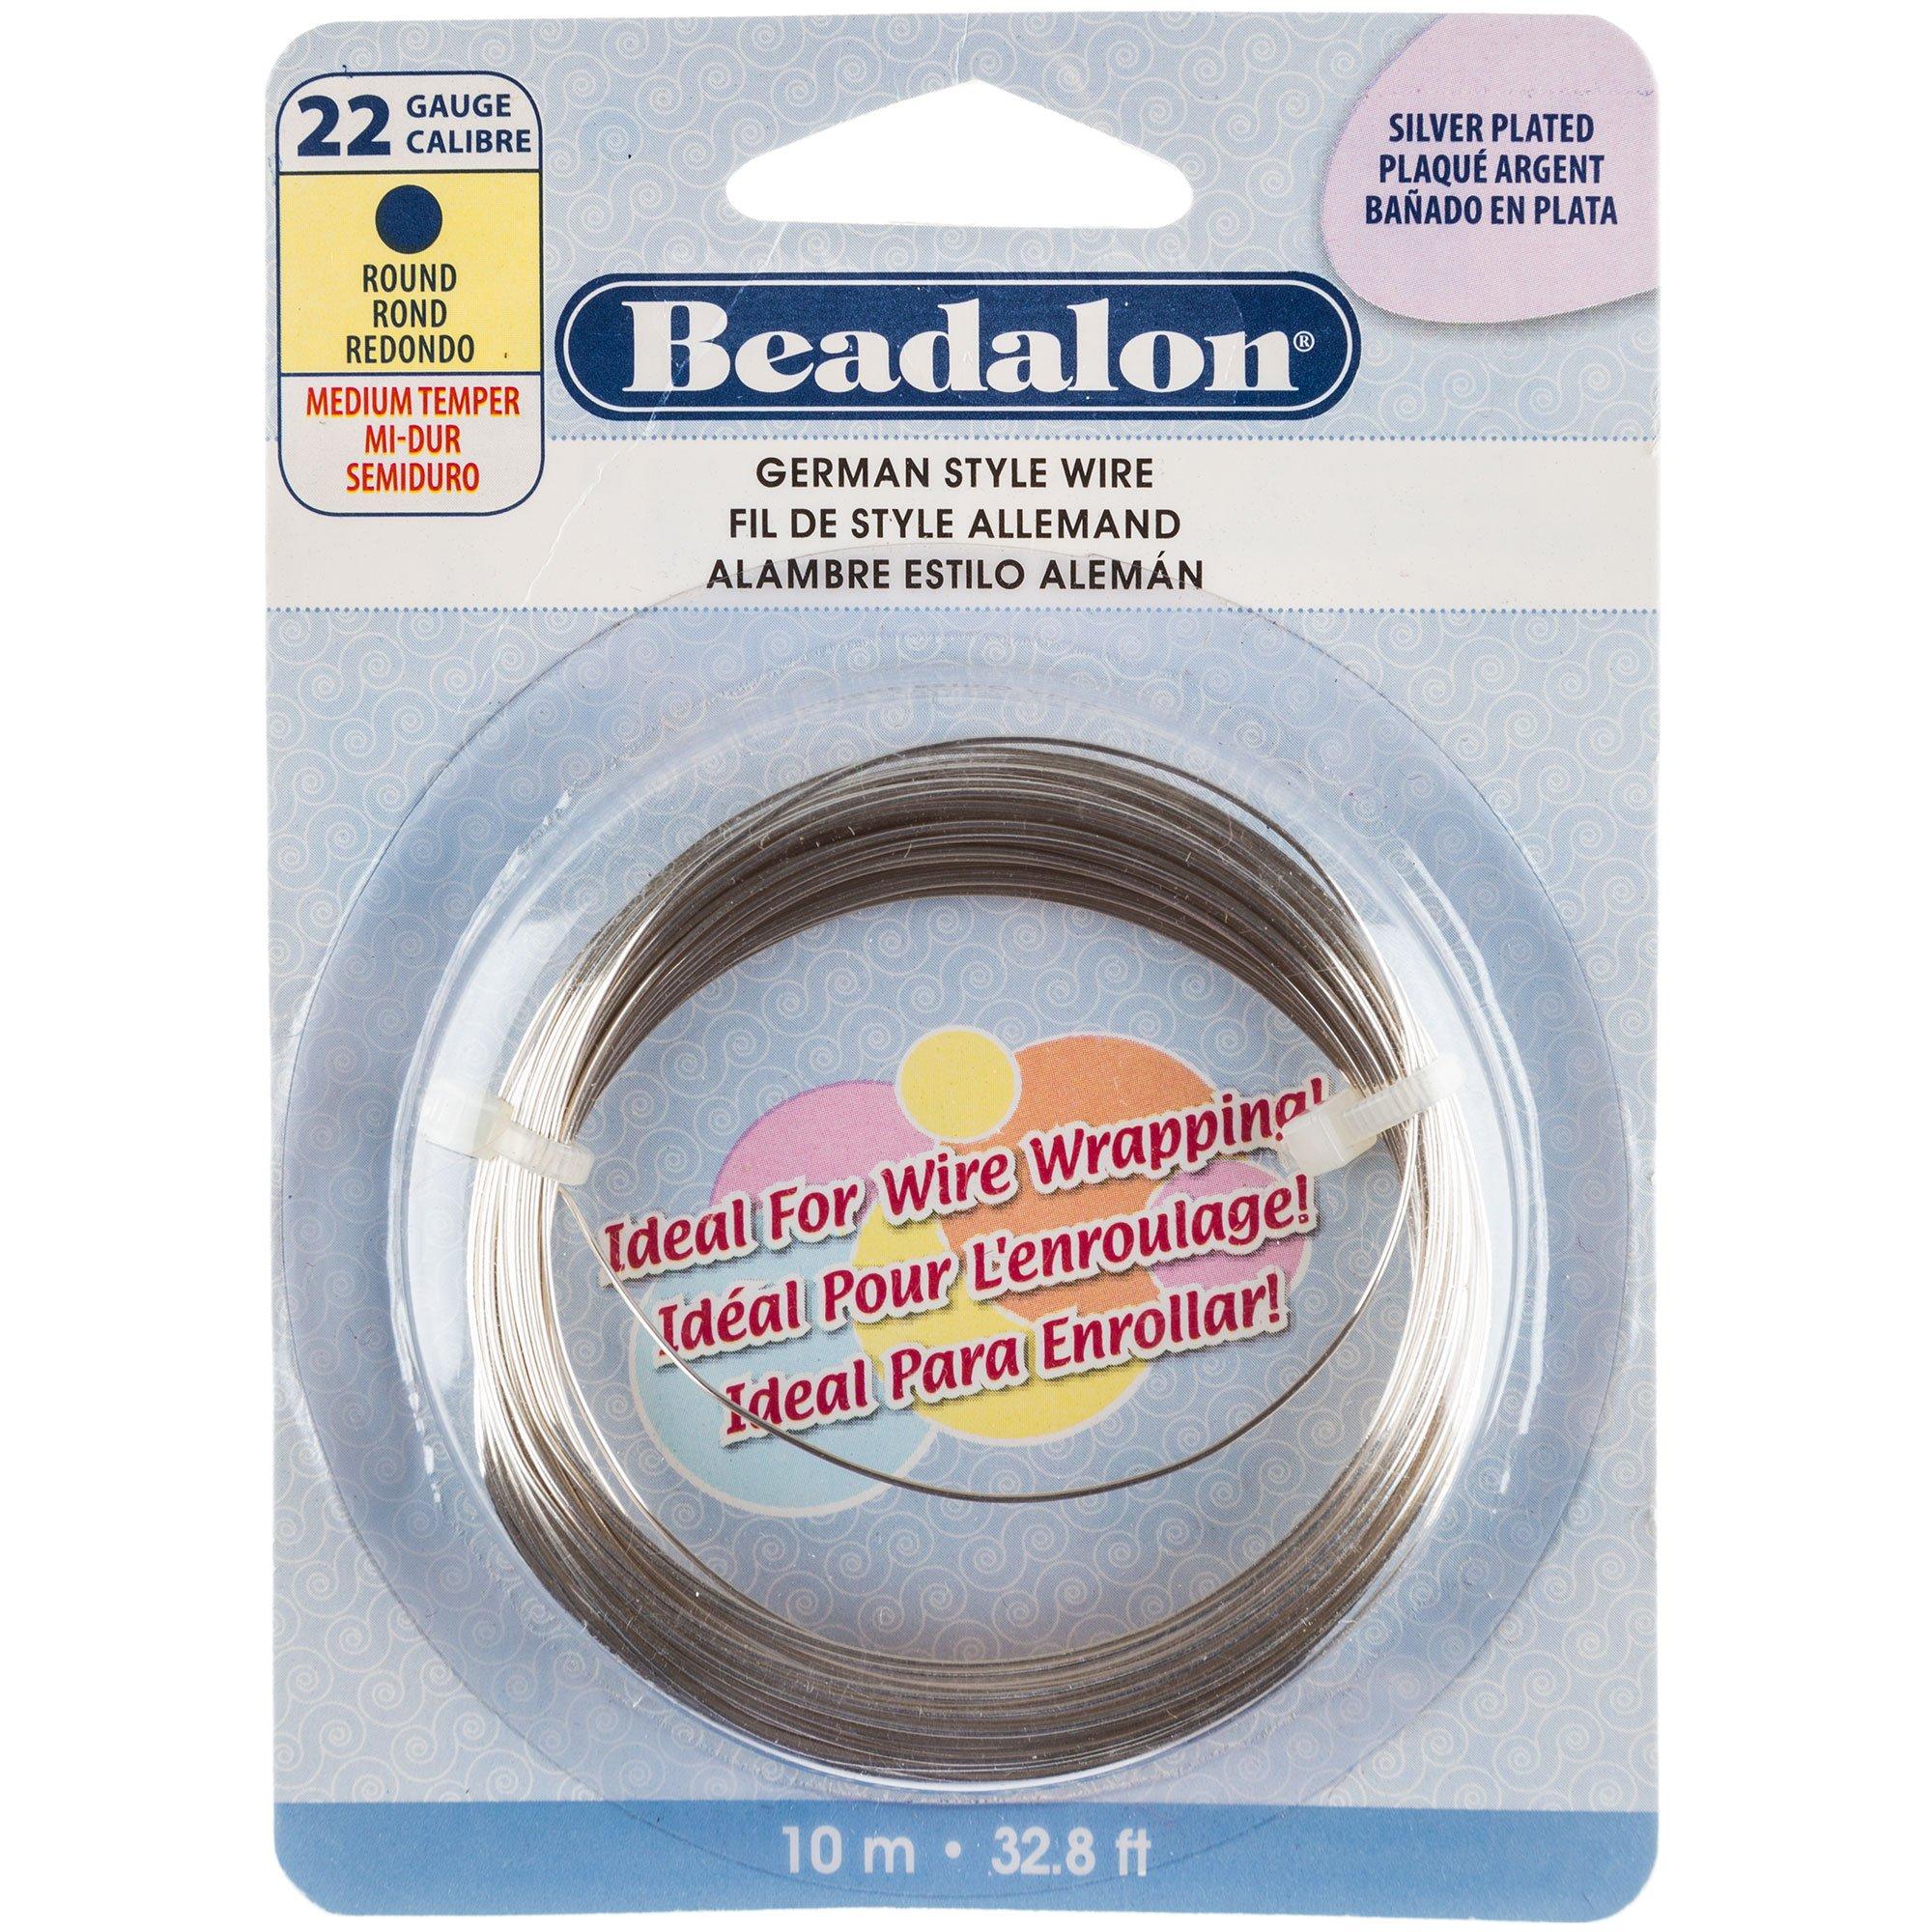 Beadalon German Style Wire, Round, Copper, 22 Gauge, 10m - 180cu-022